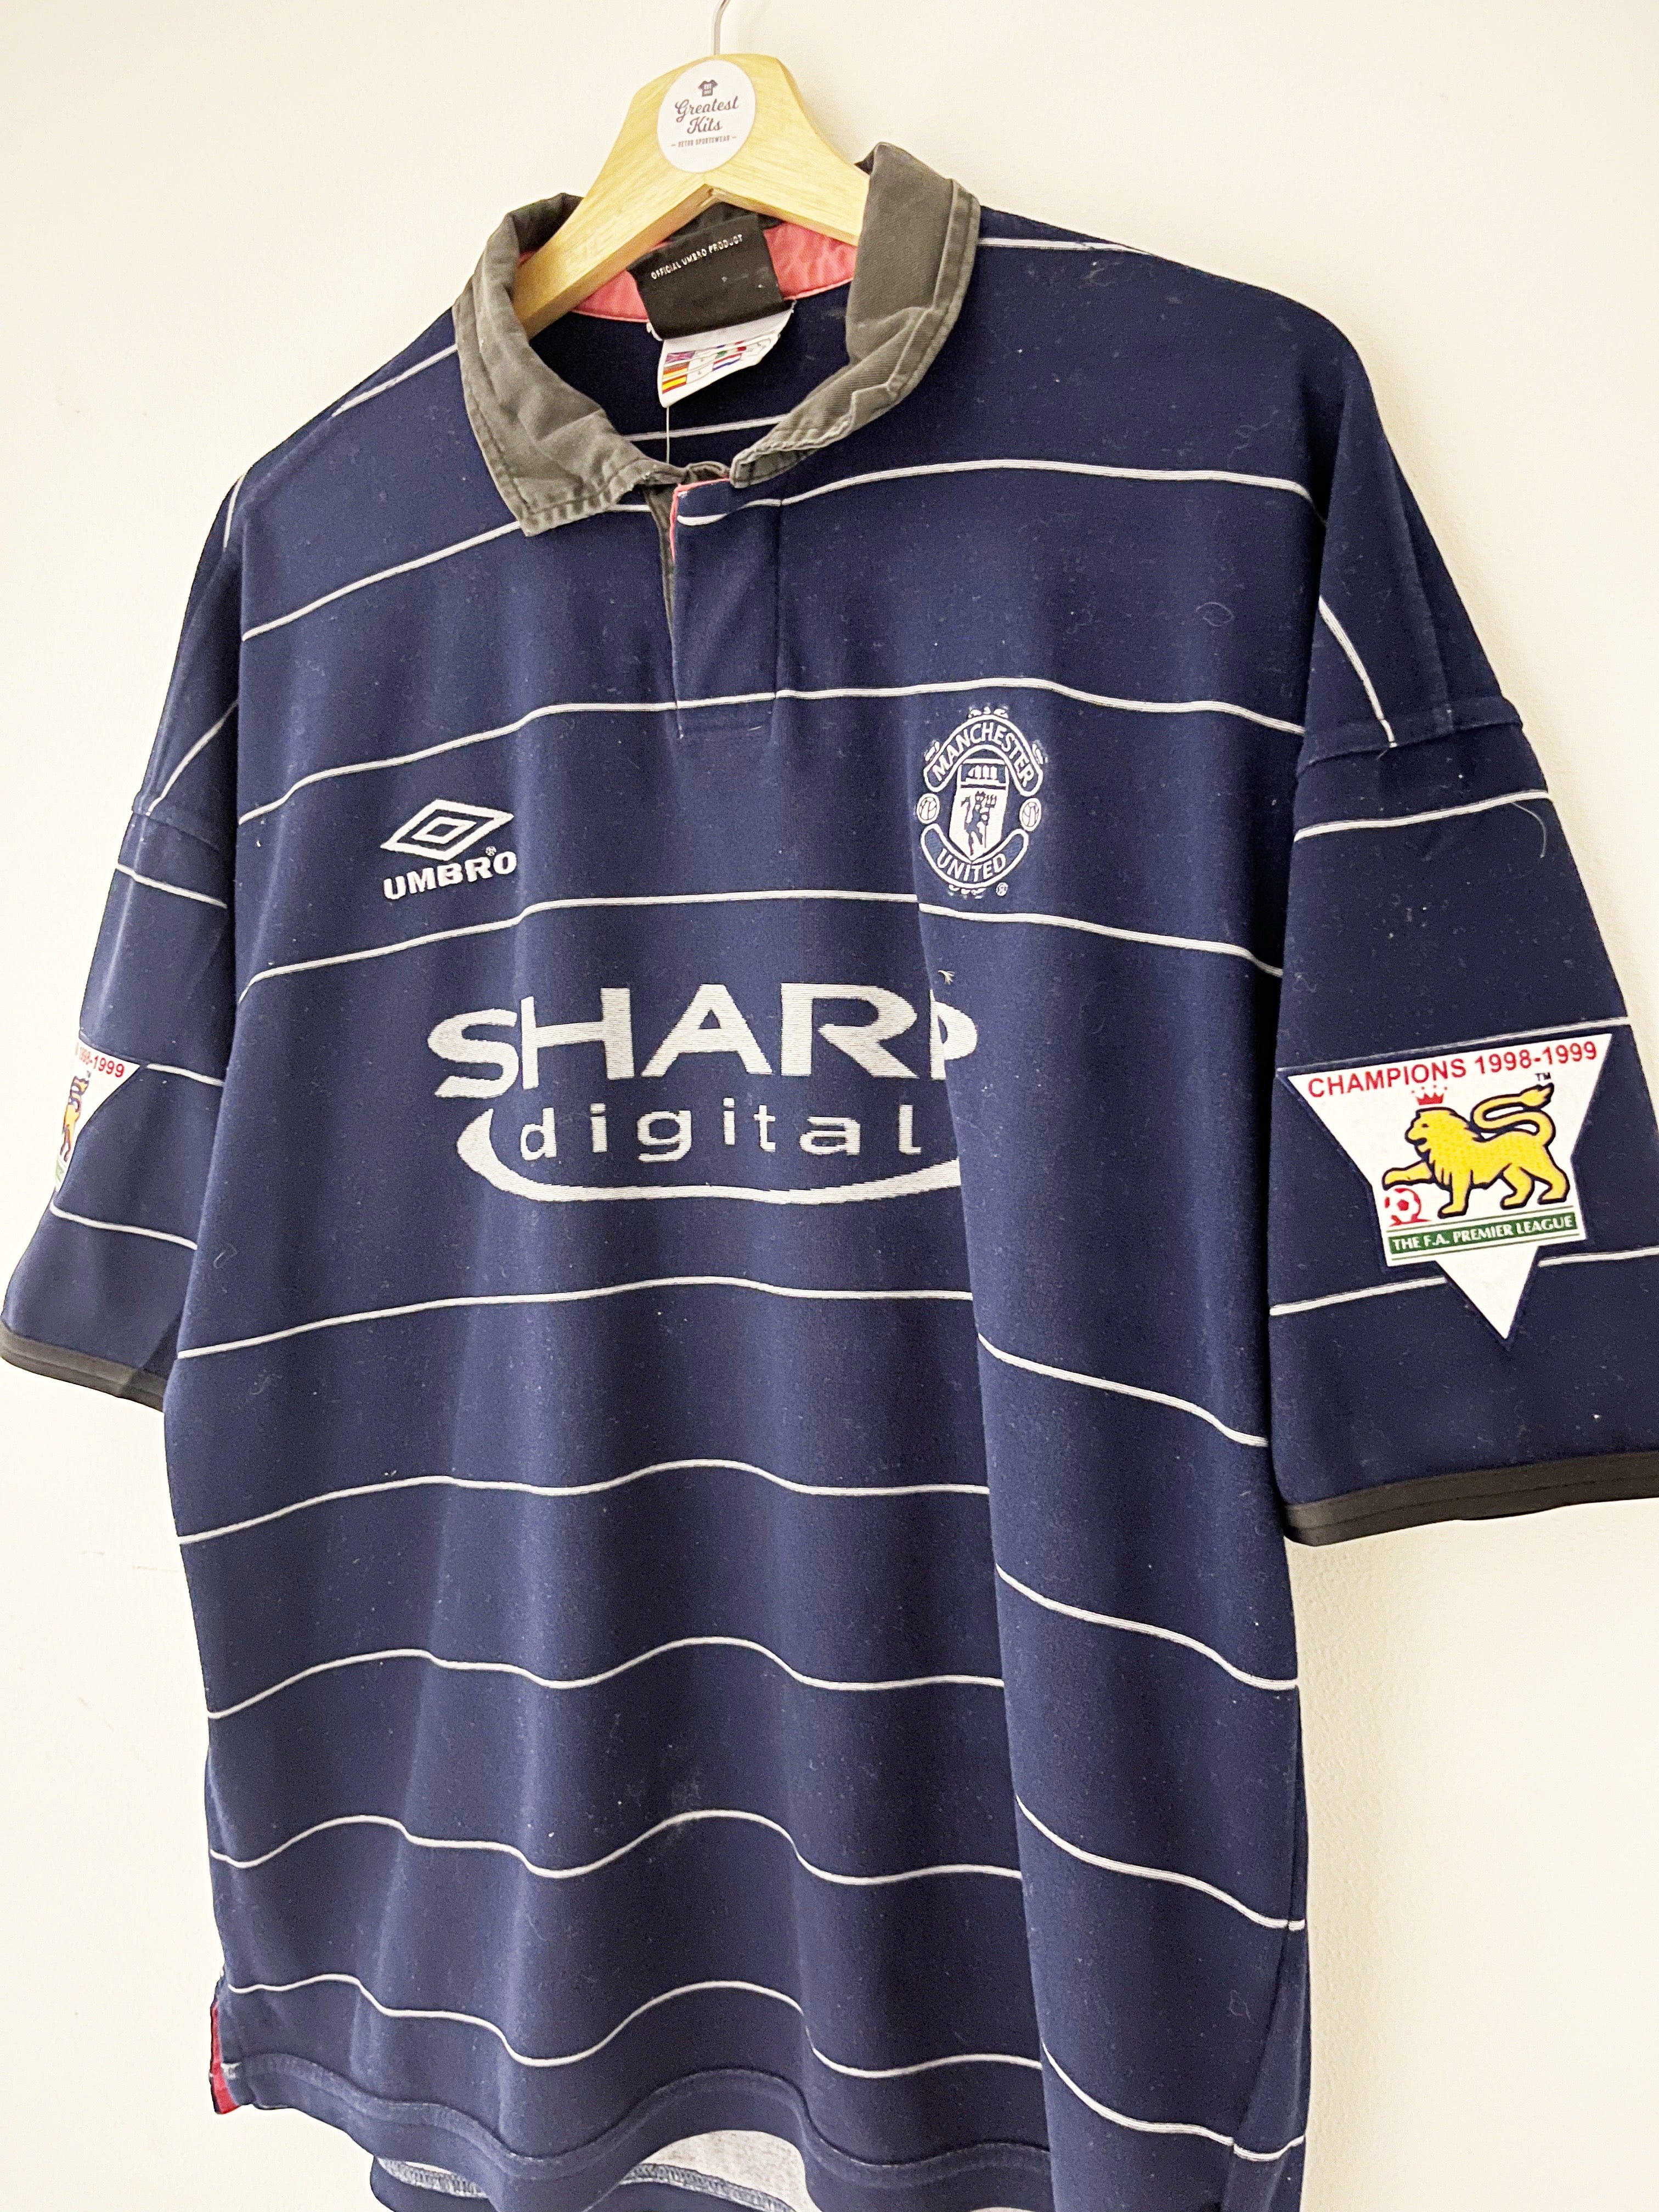 1999/00 Camiseta visitante del Manchester United Scholes # 18 (L) 8/10 